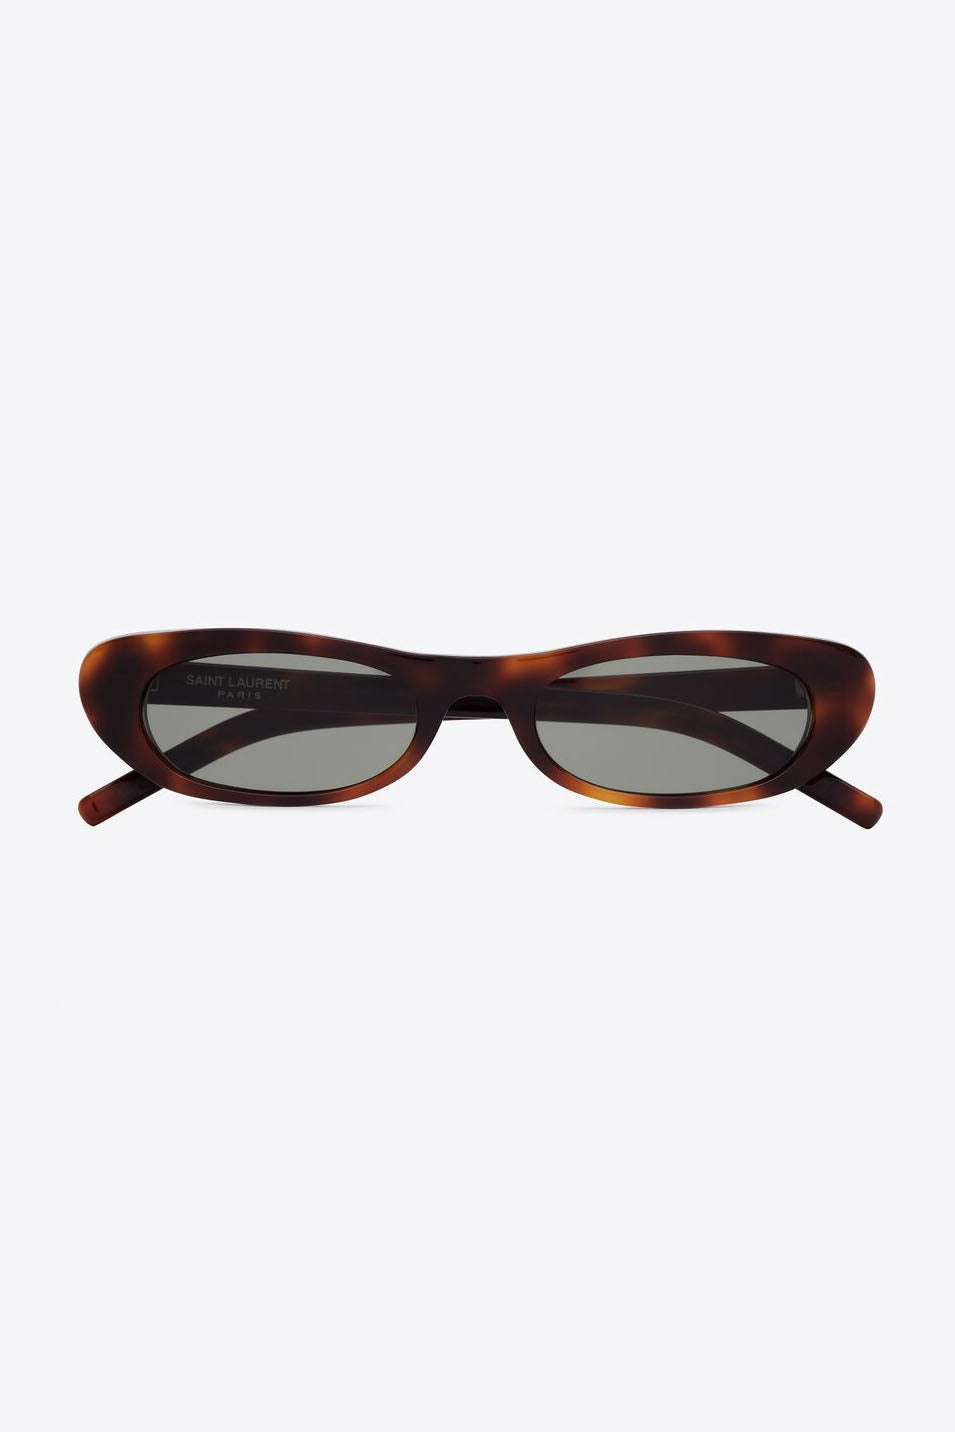 Saint Laurent Sunglasses Havana SL557 002